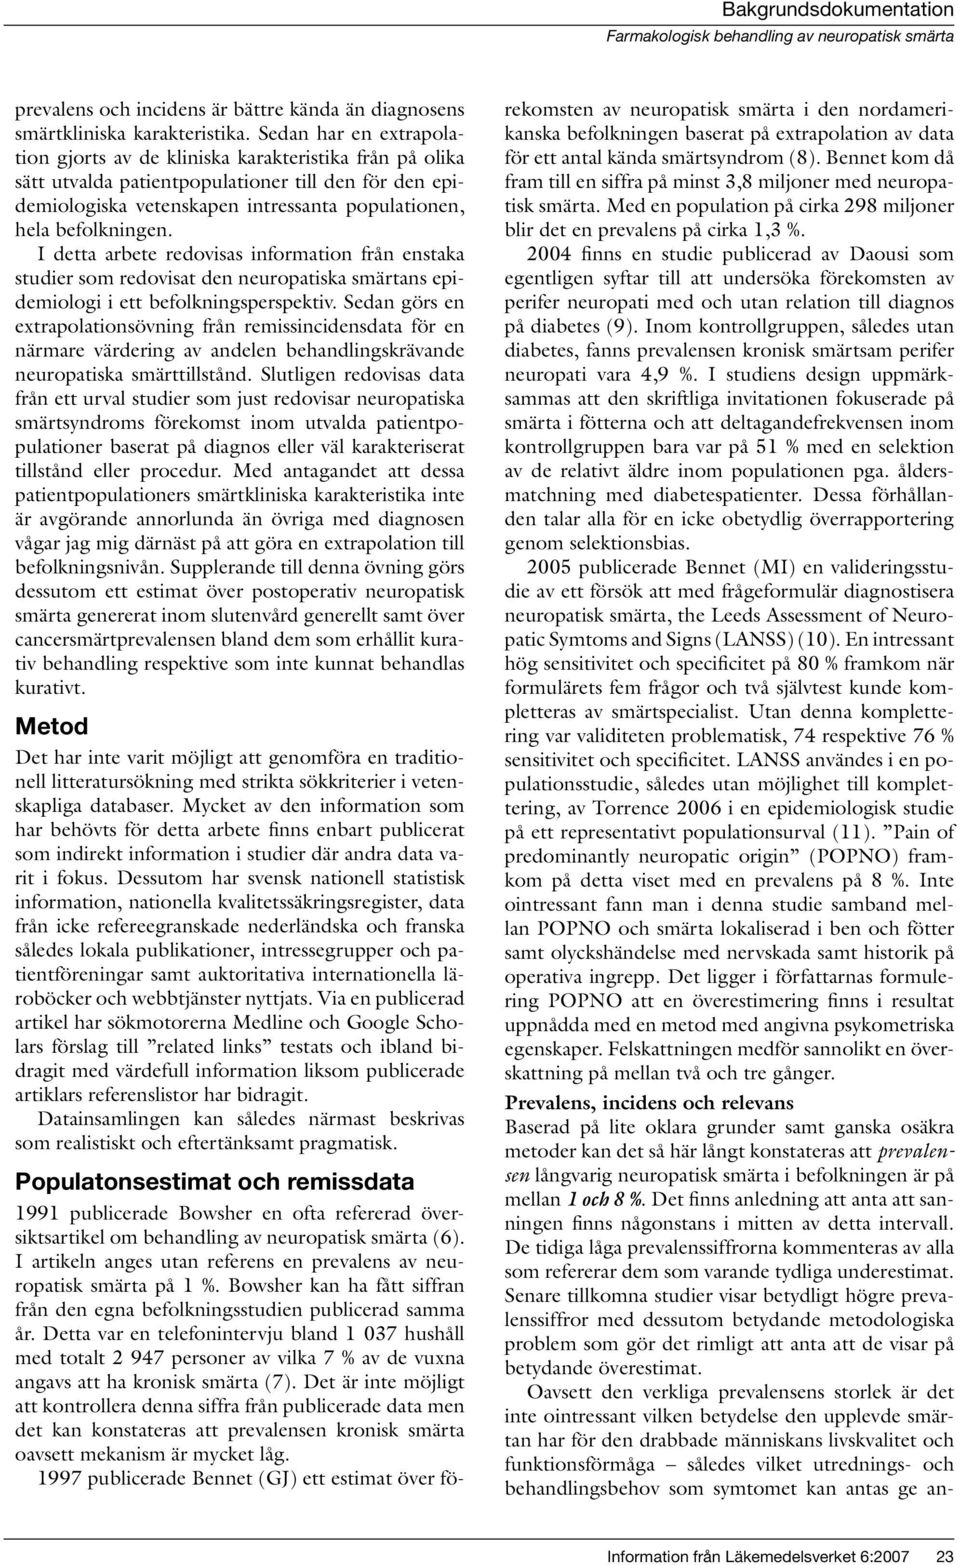 2004 finns en studie publicerad av Daousi som egentligen syftar till att undersöka förekomsten av perifer neuropati med och utan relation till diagnos på diabetes (9).